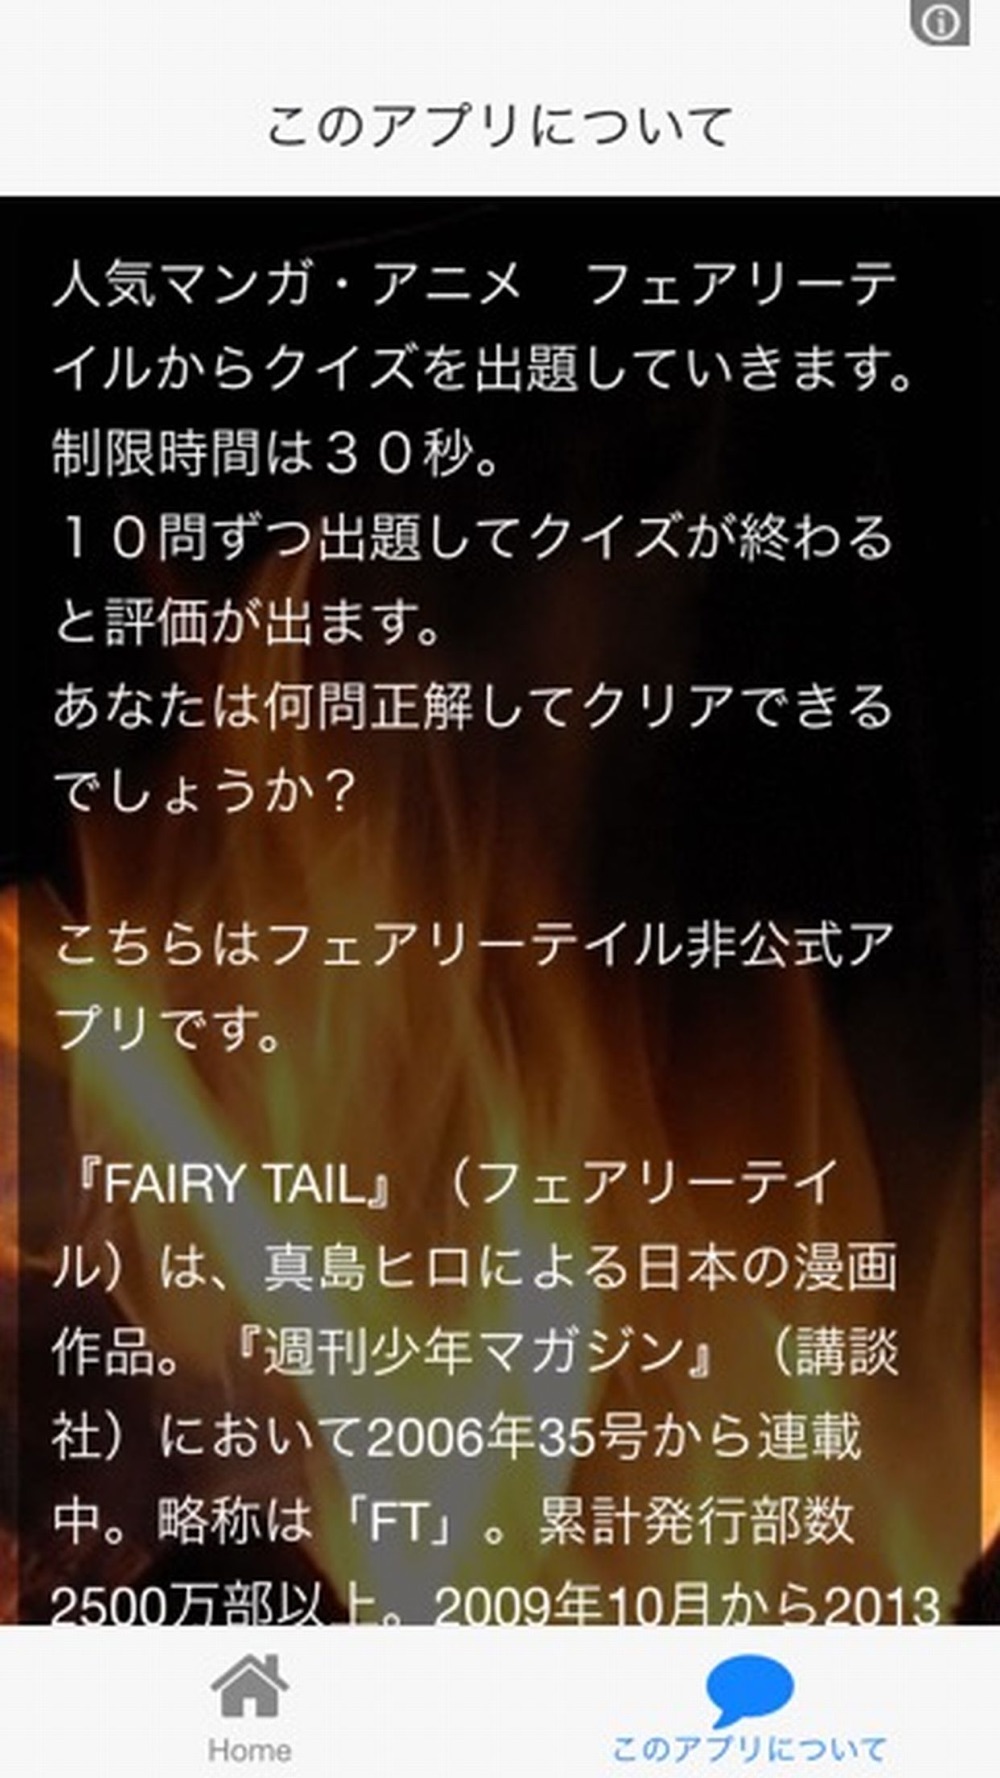 クイズ For Fairy Tail フェアリーテイル Free Download App For Iphone Steprimo Com